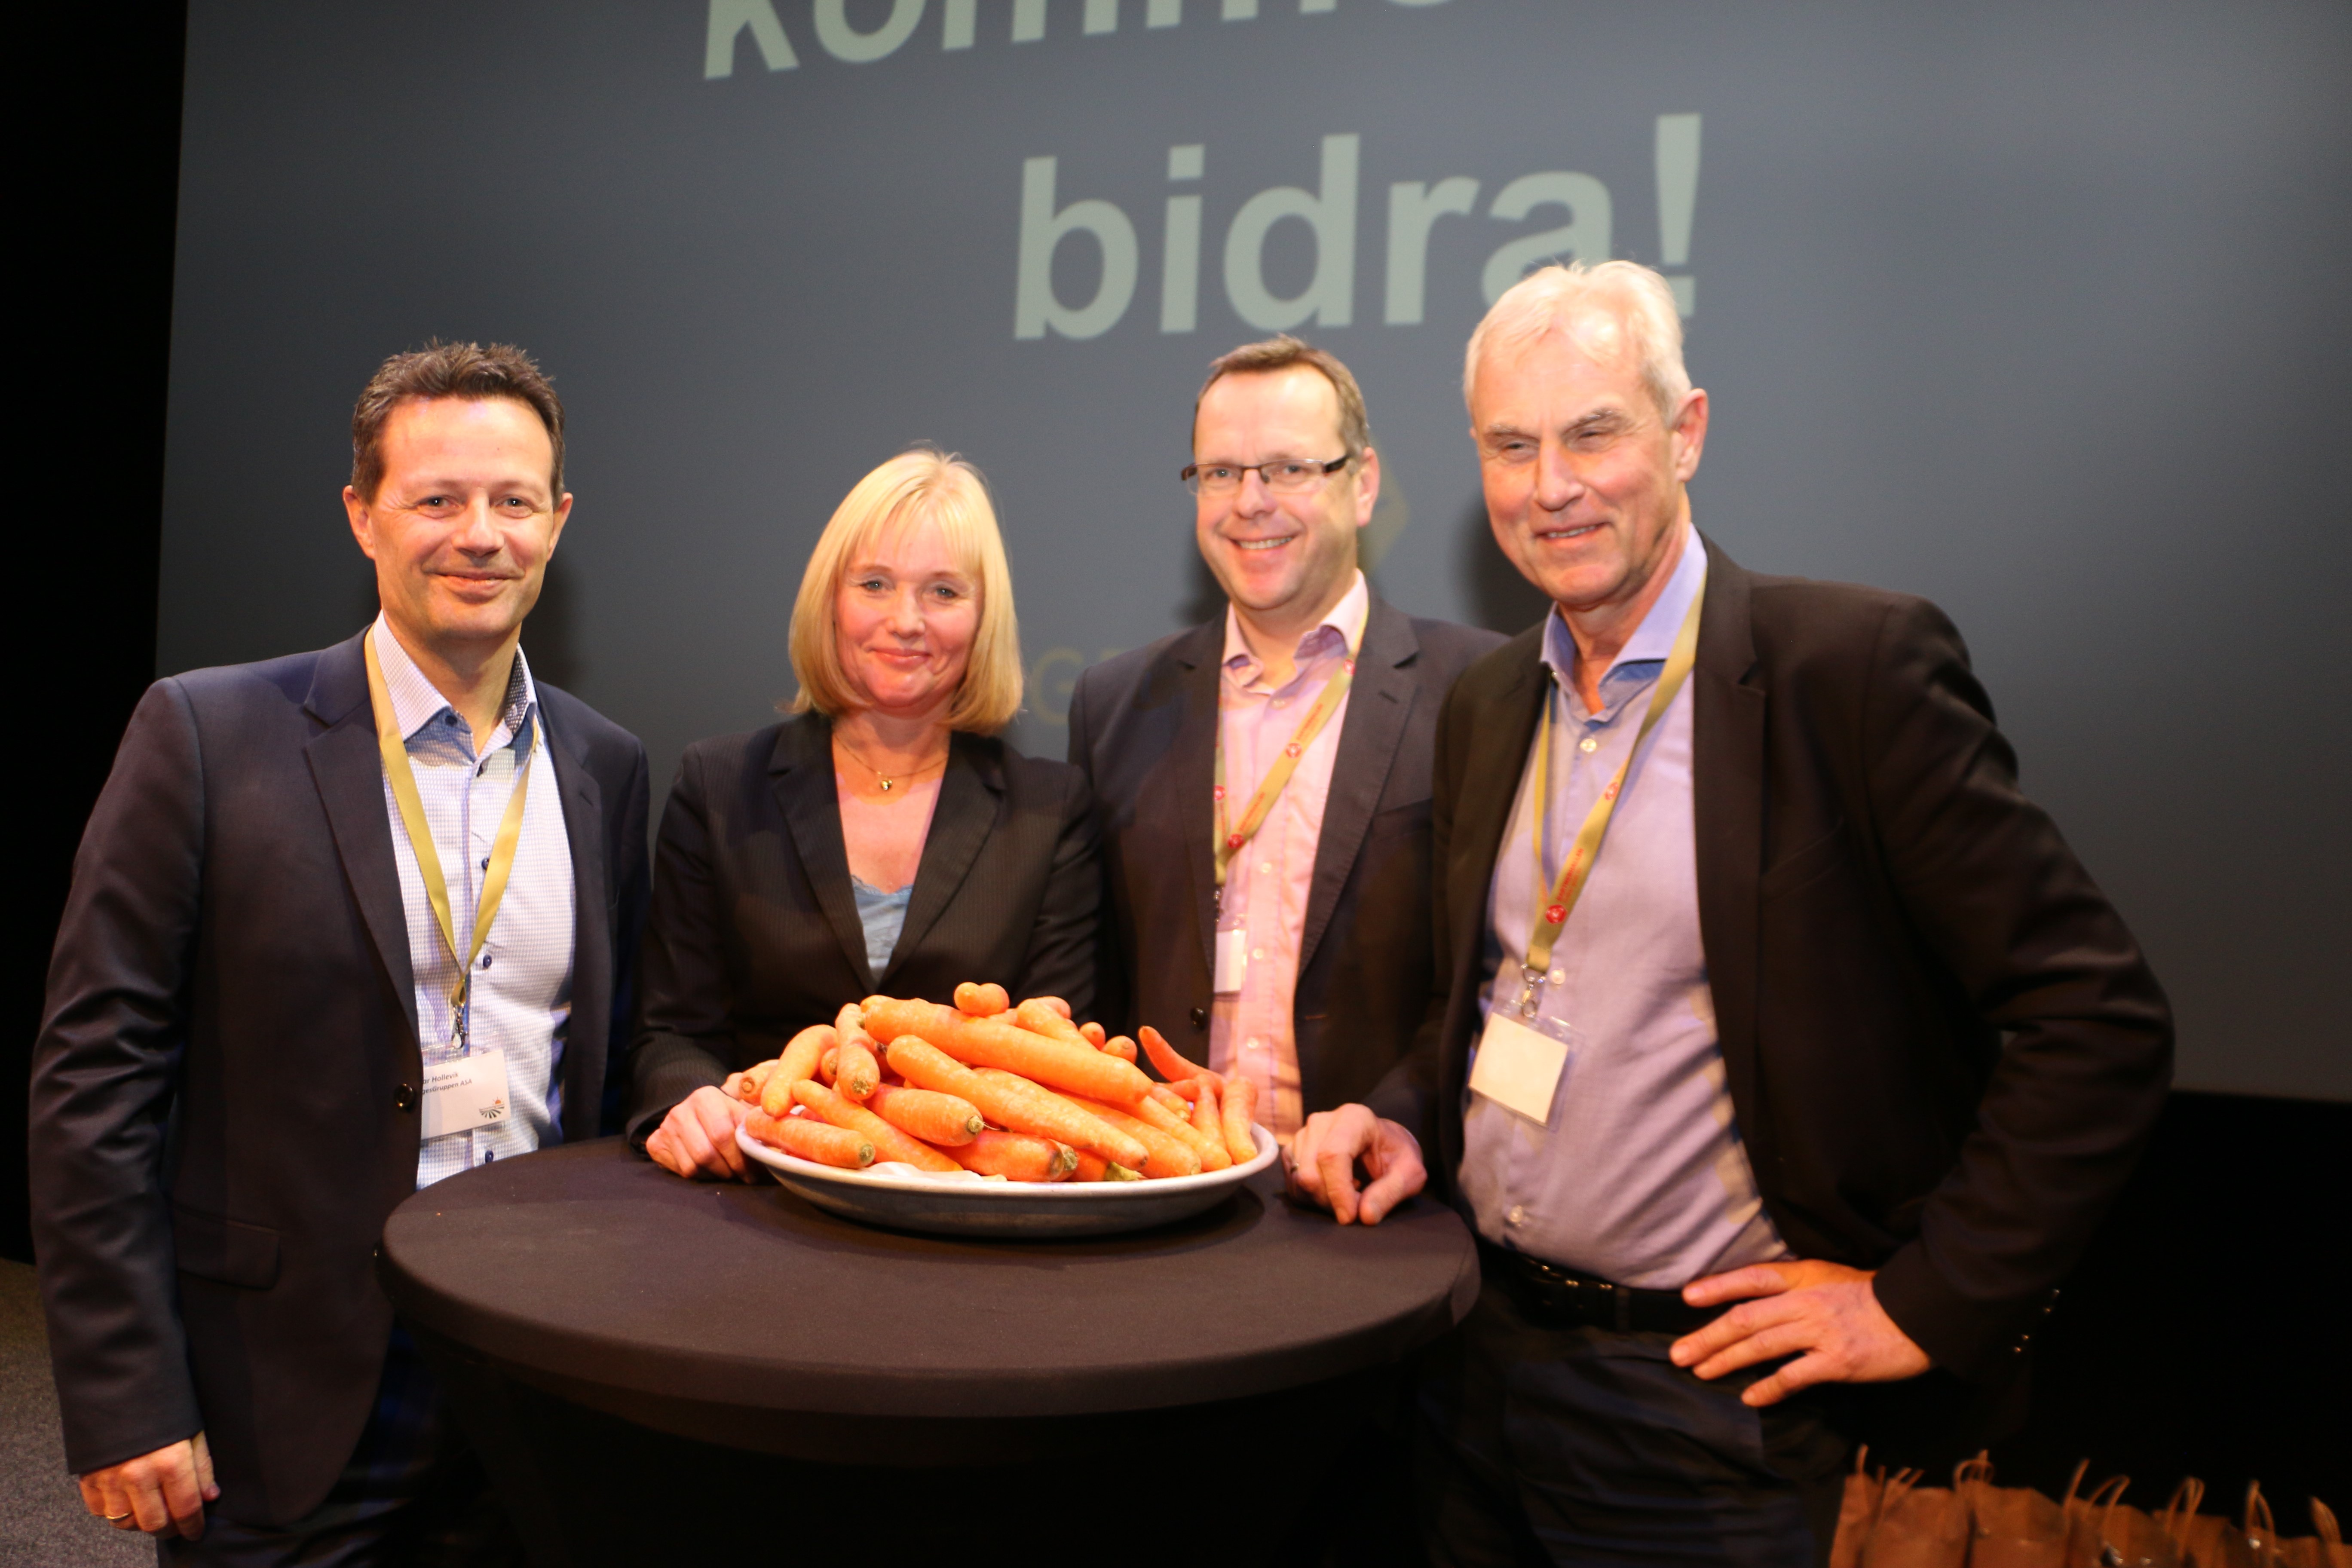 Grofondet ble lansert under Gartnerkongressen av Runar Hollevik konsernsjef i NorgesGruppen, Alvhild Hedstein leder for Grofondet, Anders Nordlund styreleder i Gartnerhallen og Rune Flaen adm. direktør i BAMA.